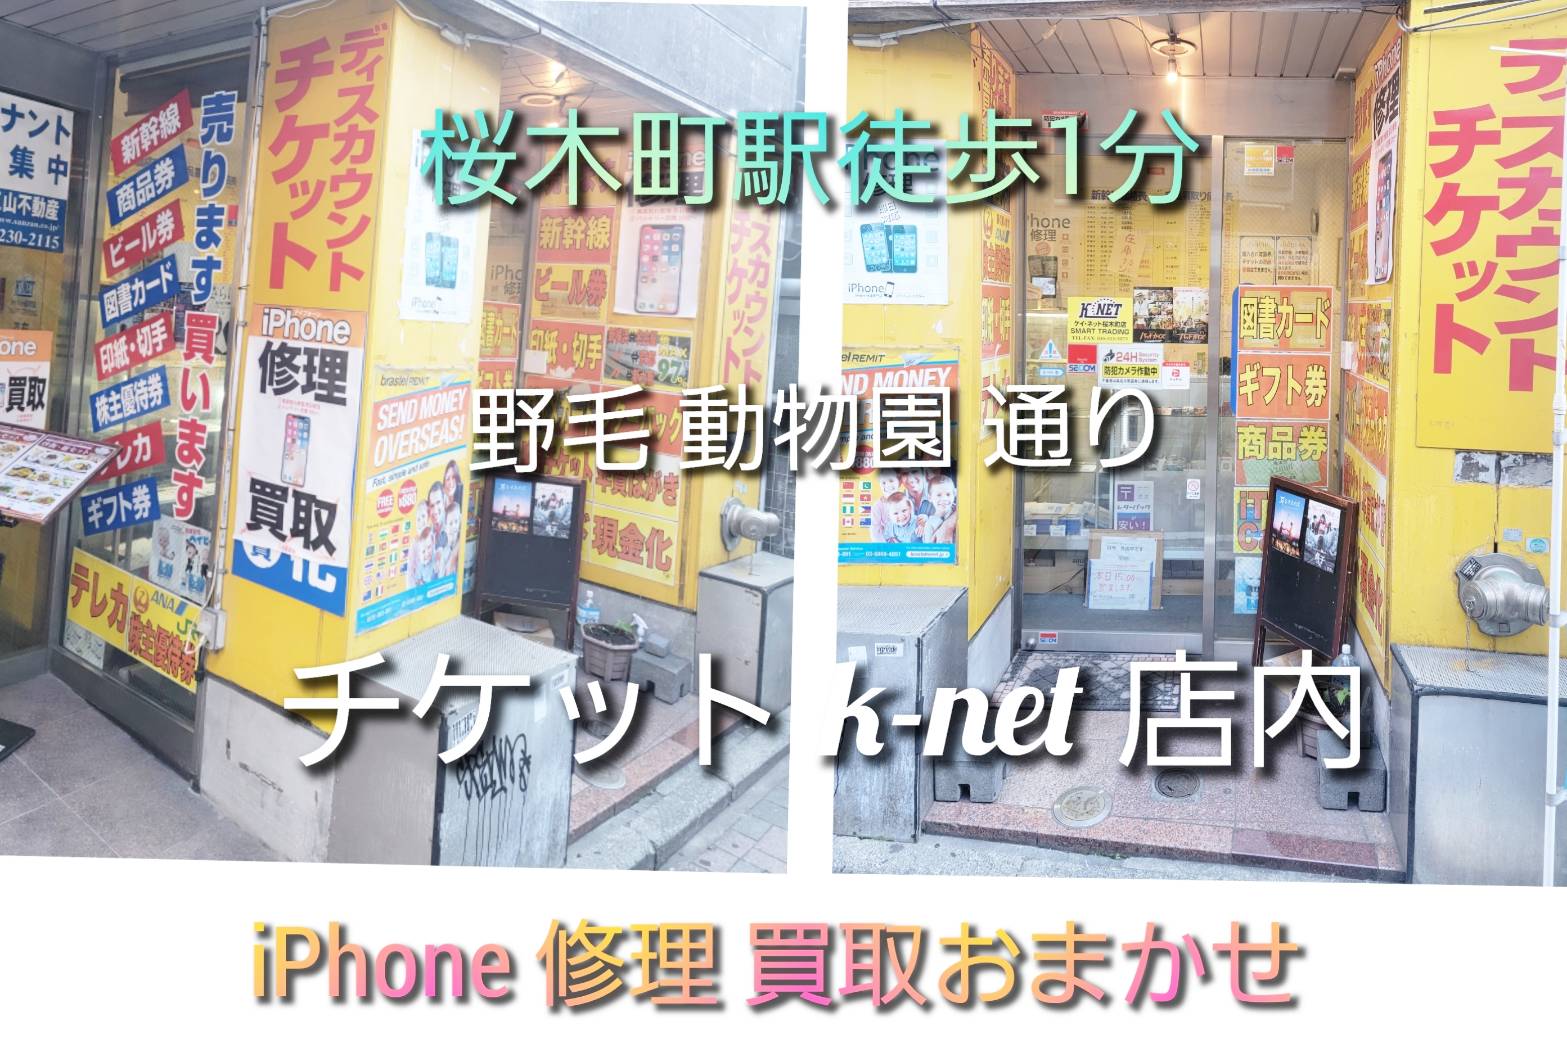 iPhone修理バッテリー交換横浜おまかせクン店舗写真